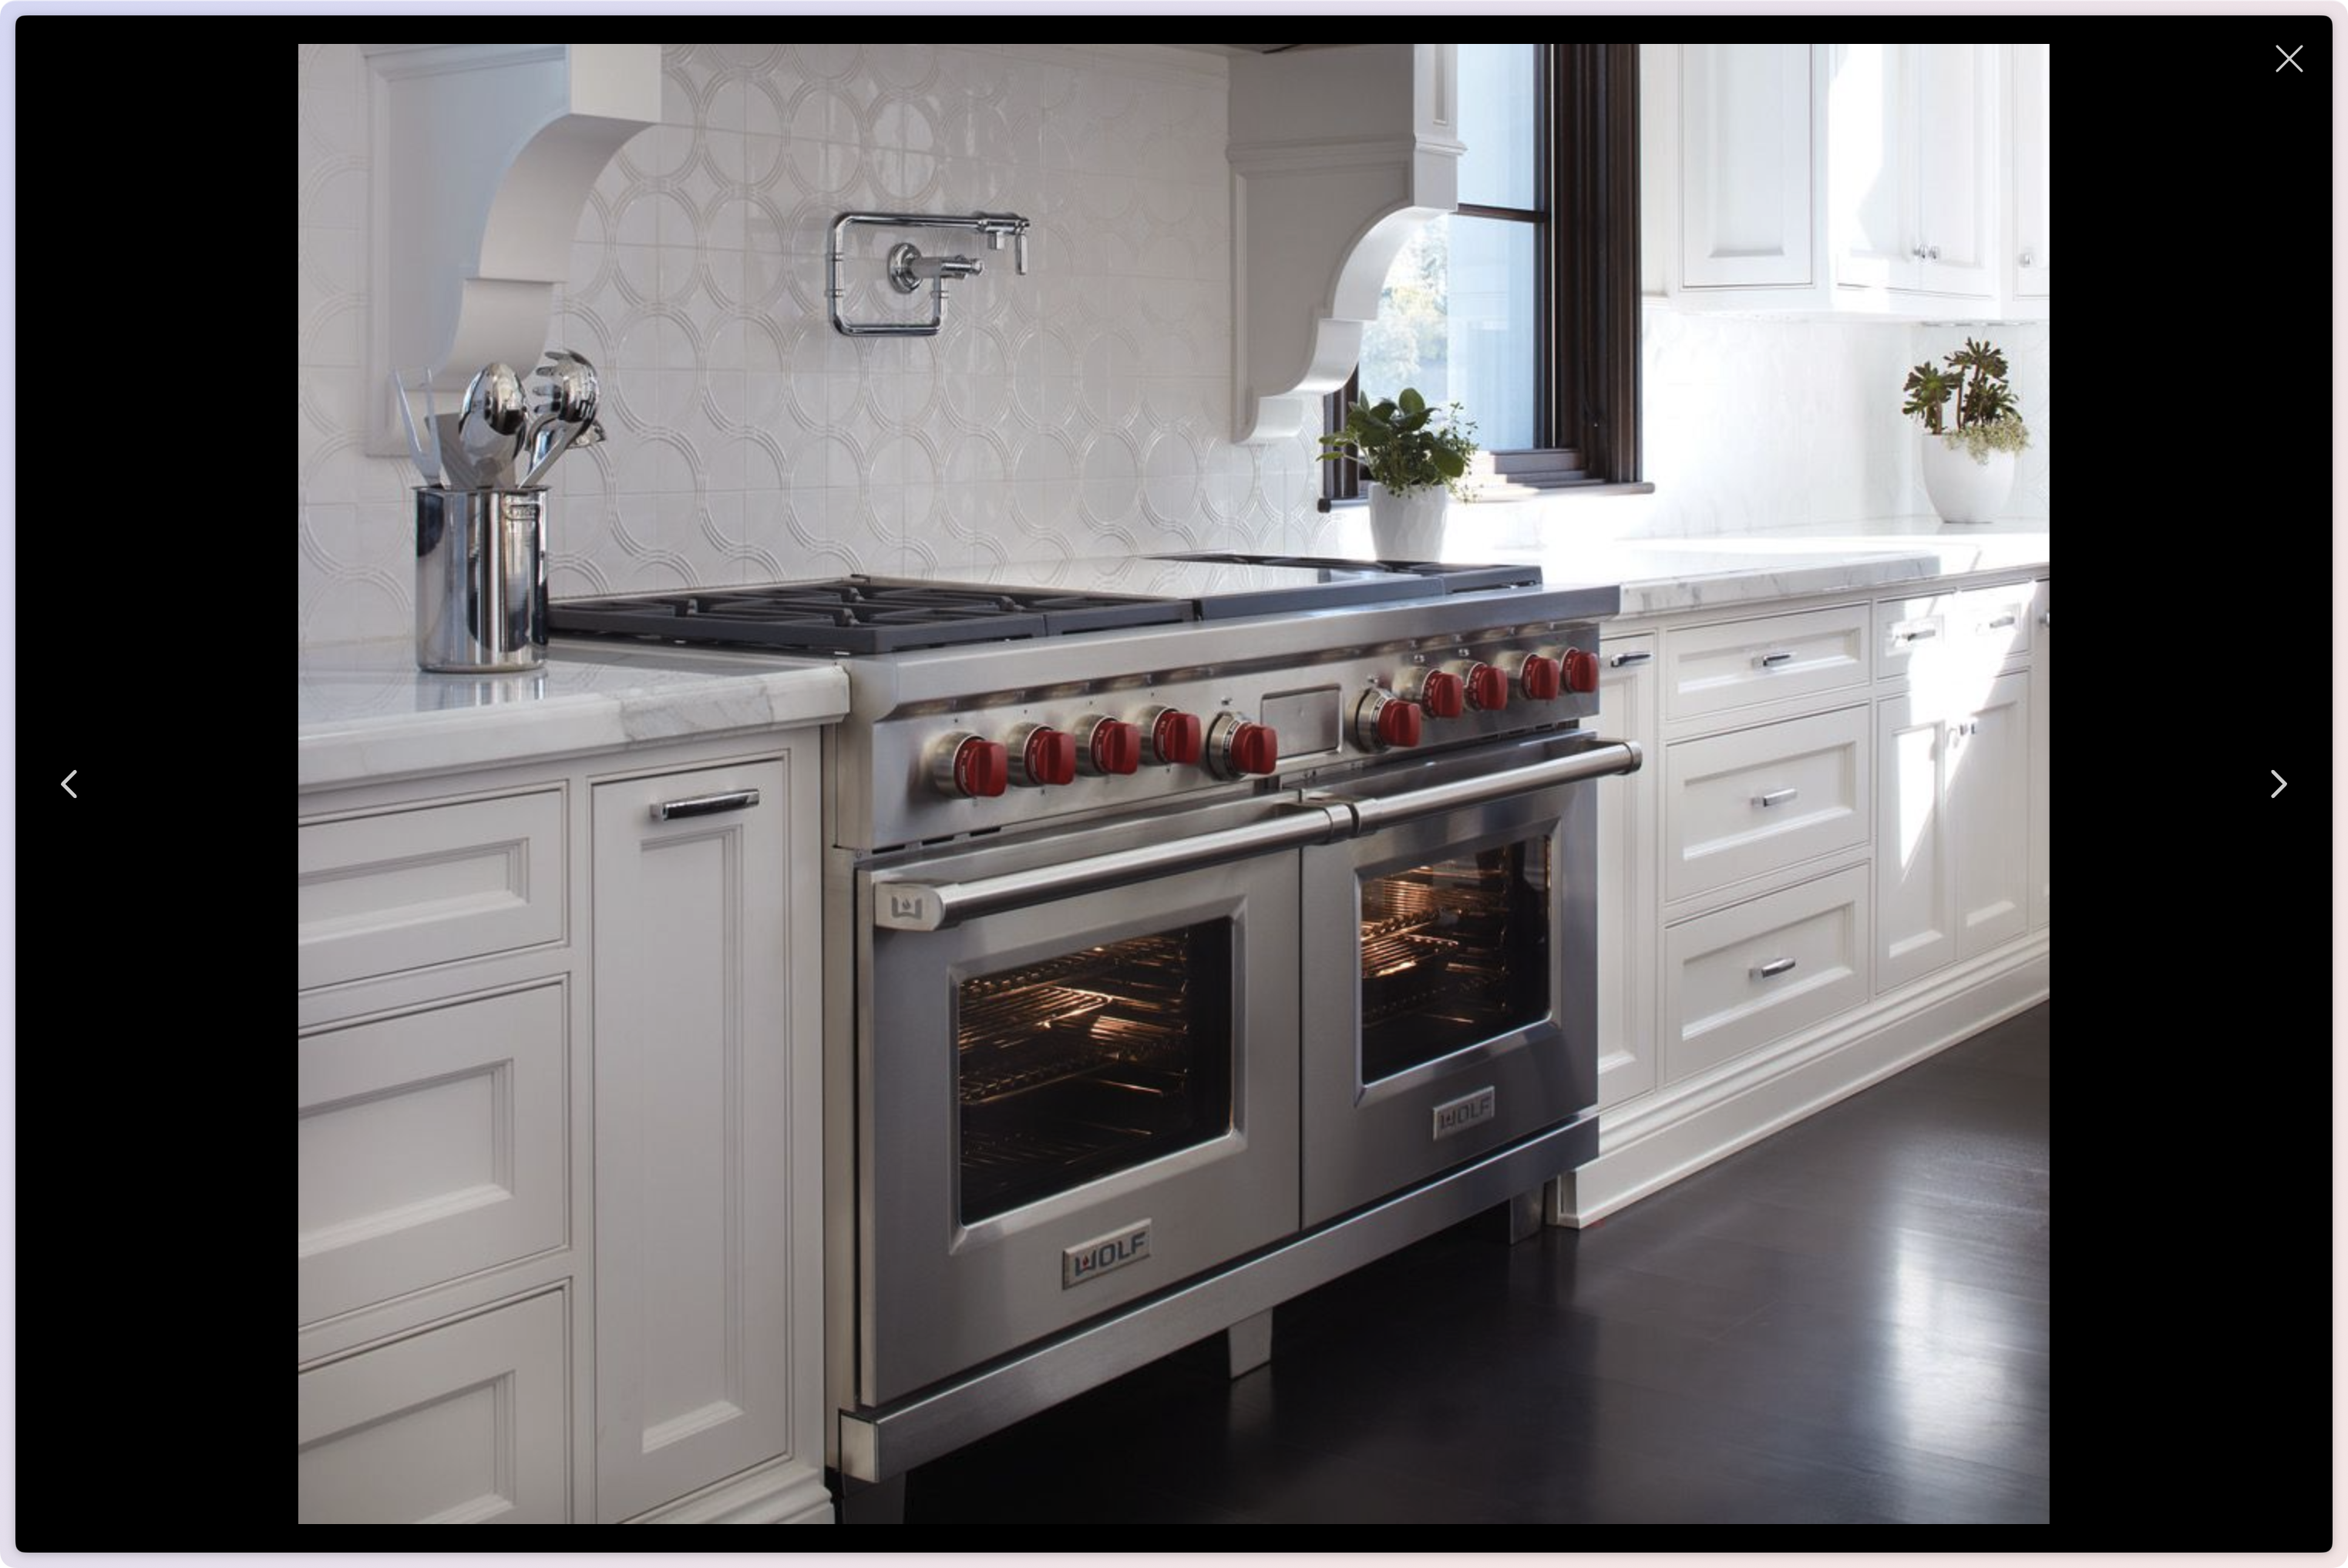 Fullscreen image of stove